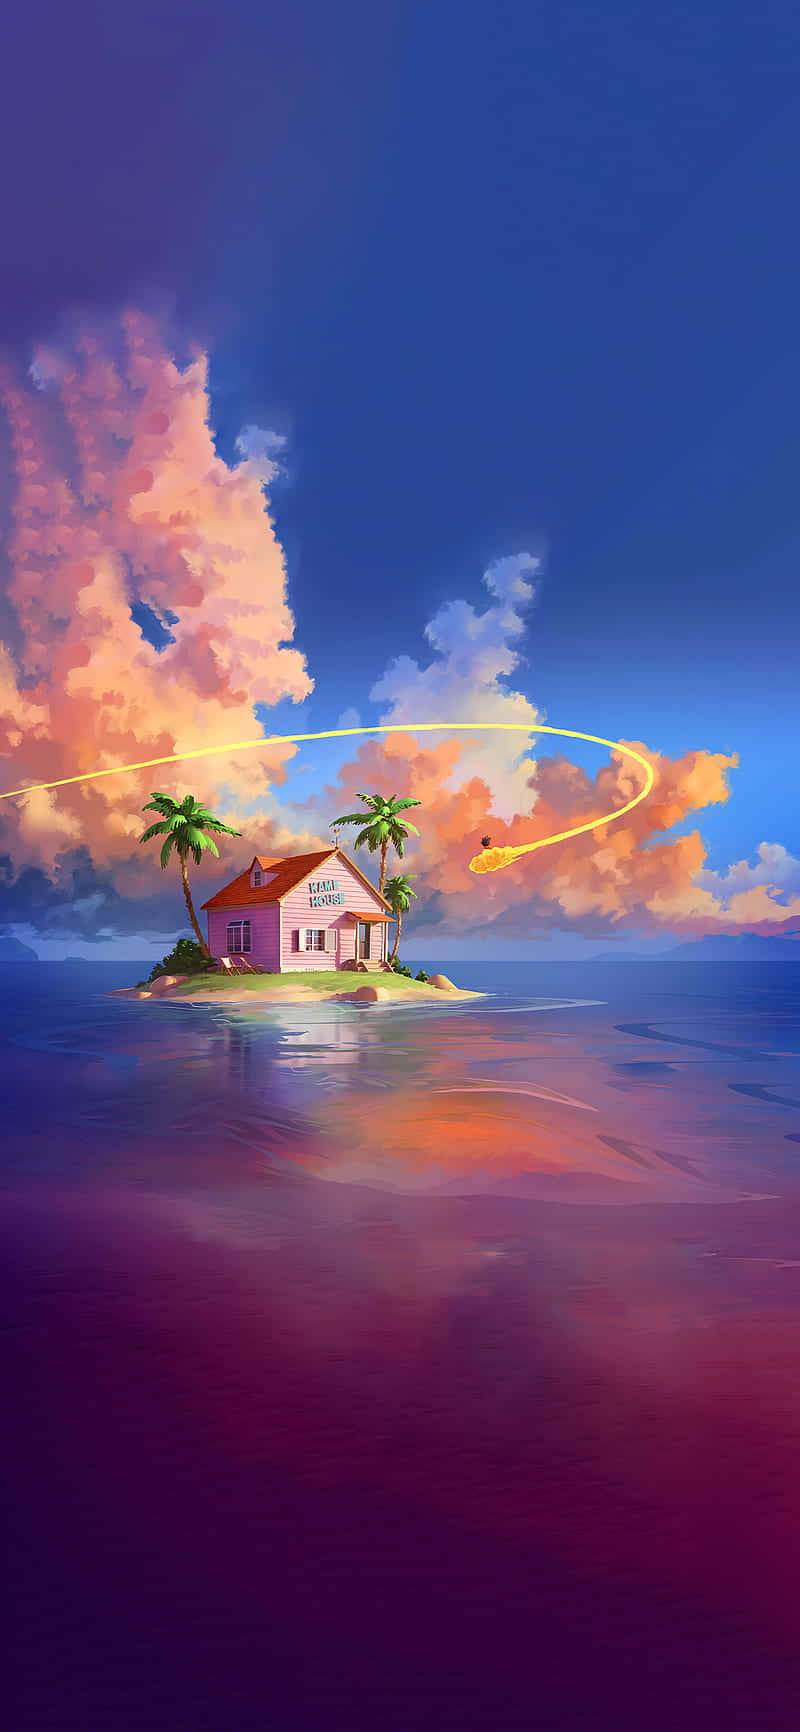 Dragon Ball_ Kame House_ Sunset_ Aesthetic.jpg Wallpaper